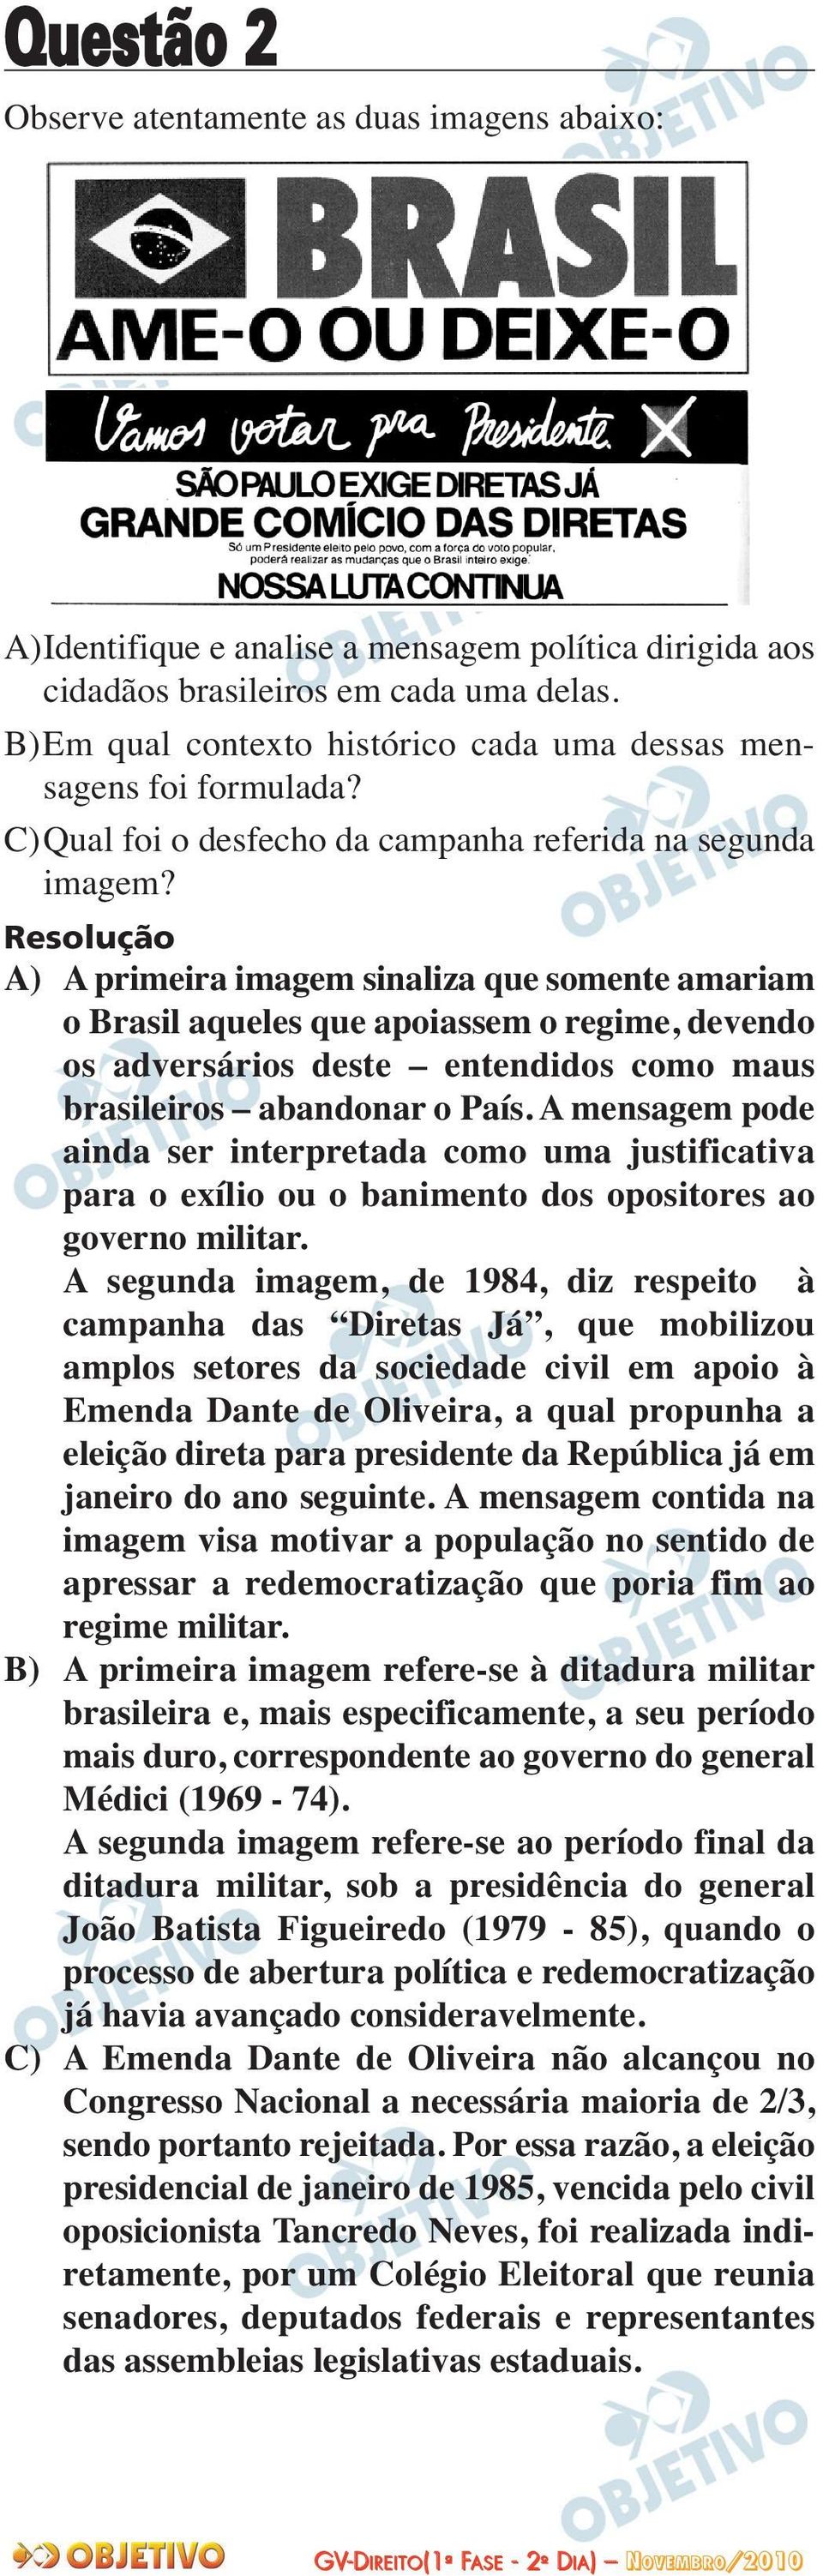 A) A primeira imagem sinaliza que somente amariam o Brasil aqueles que apoiassem o regime, devendo os adversários deste entendidos como maus brasileiros abandonar o País.